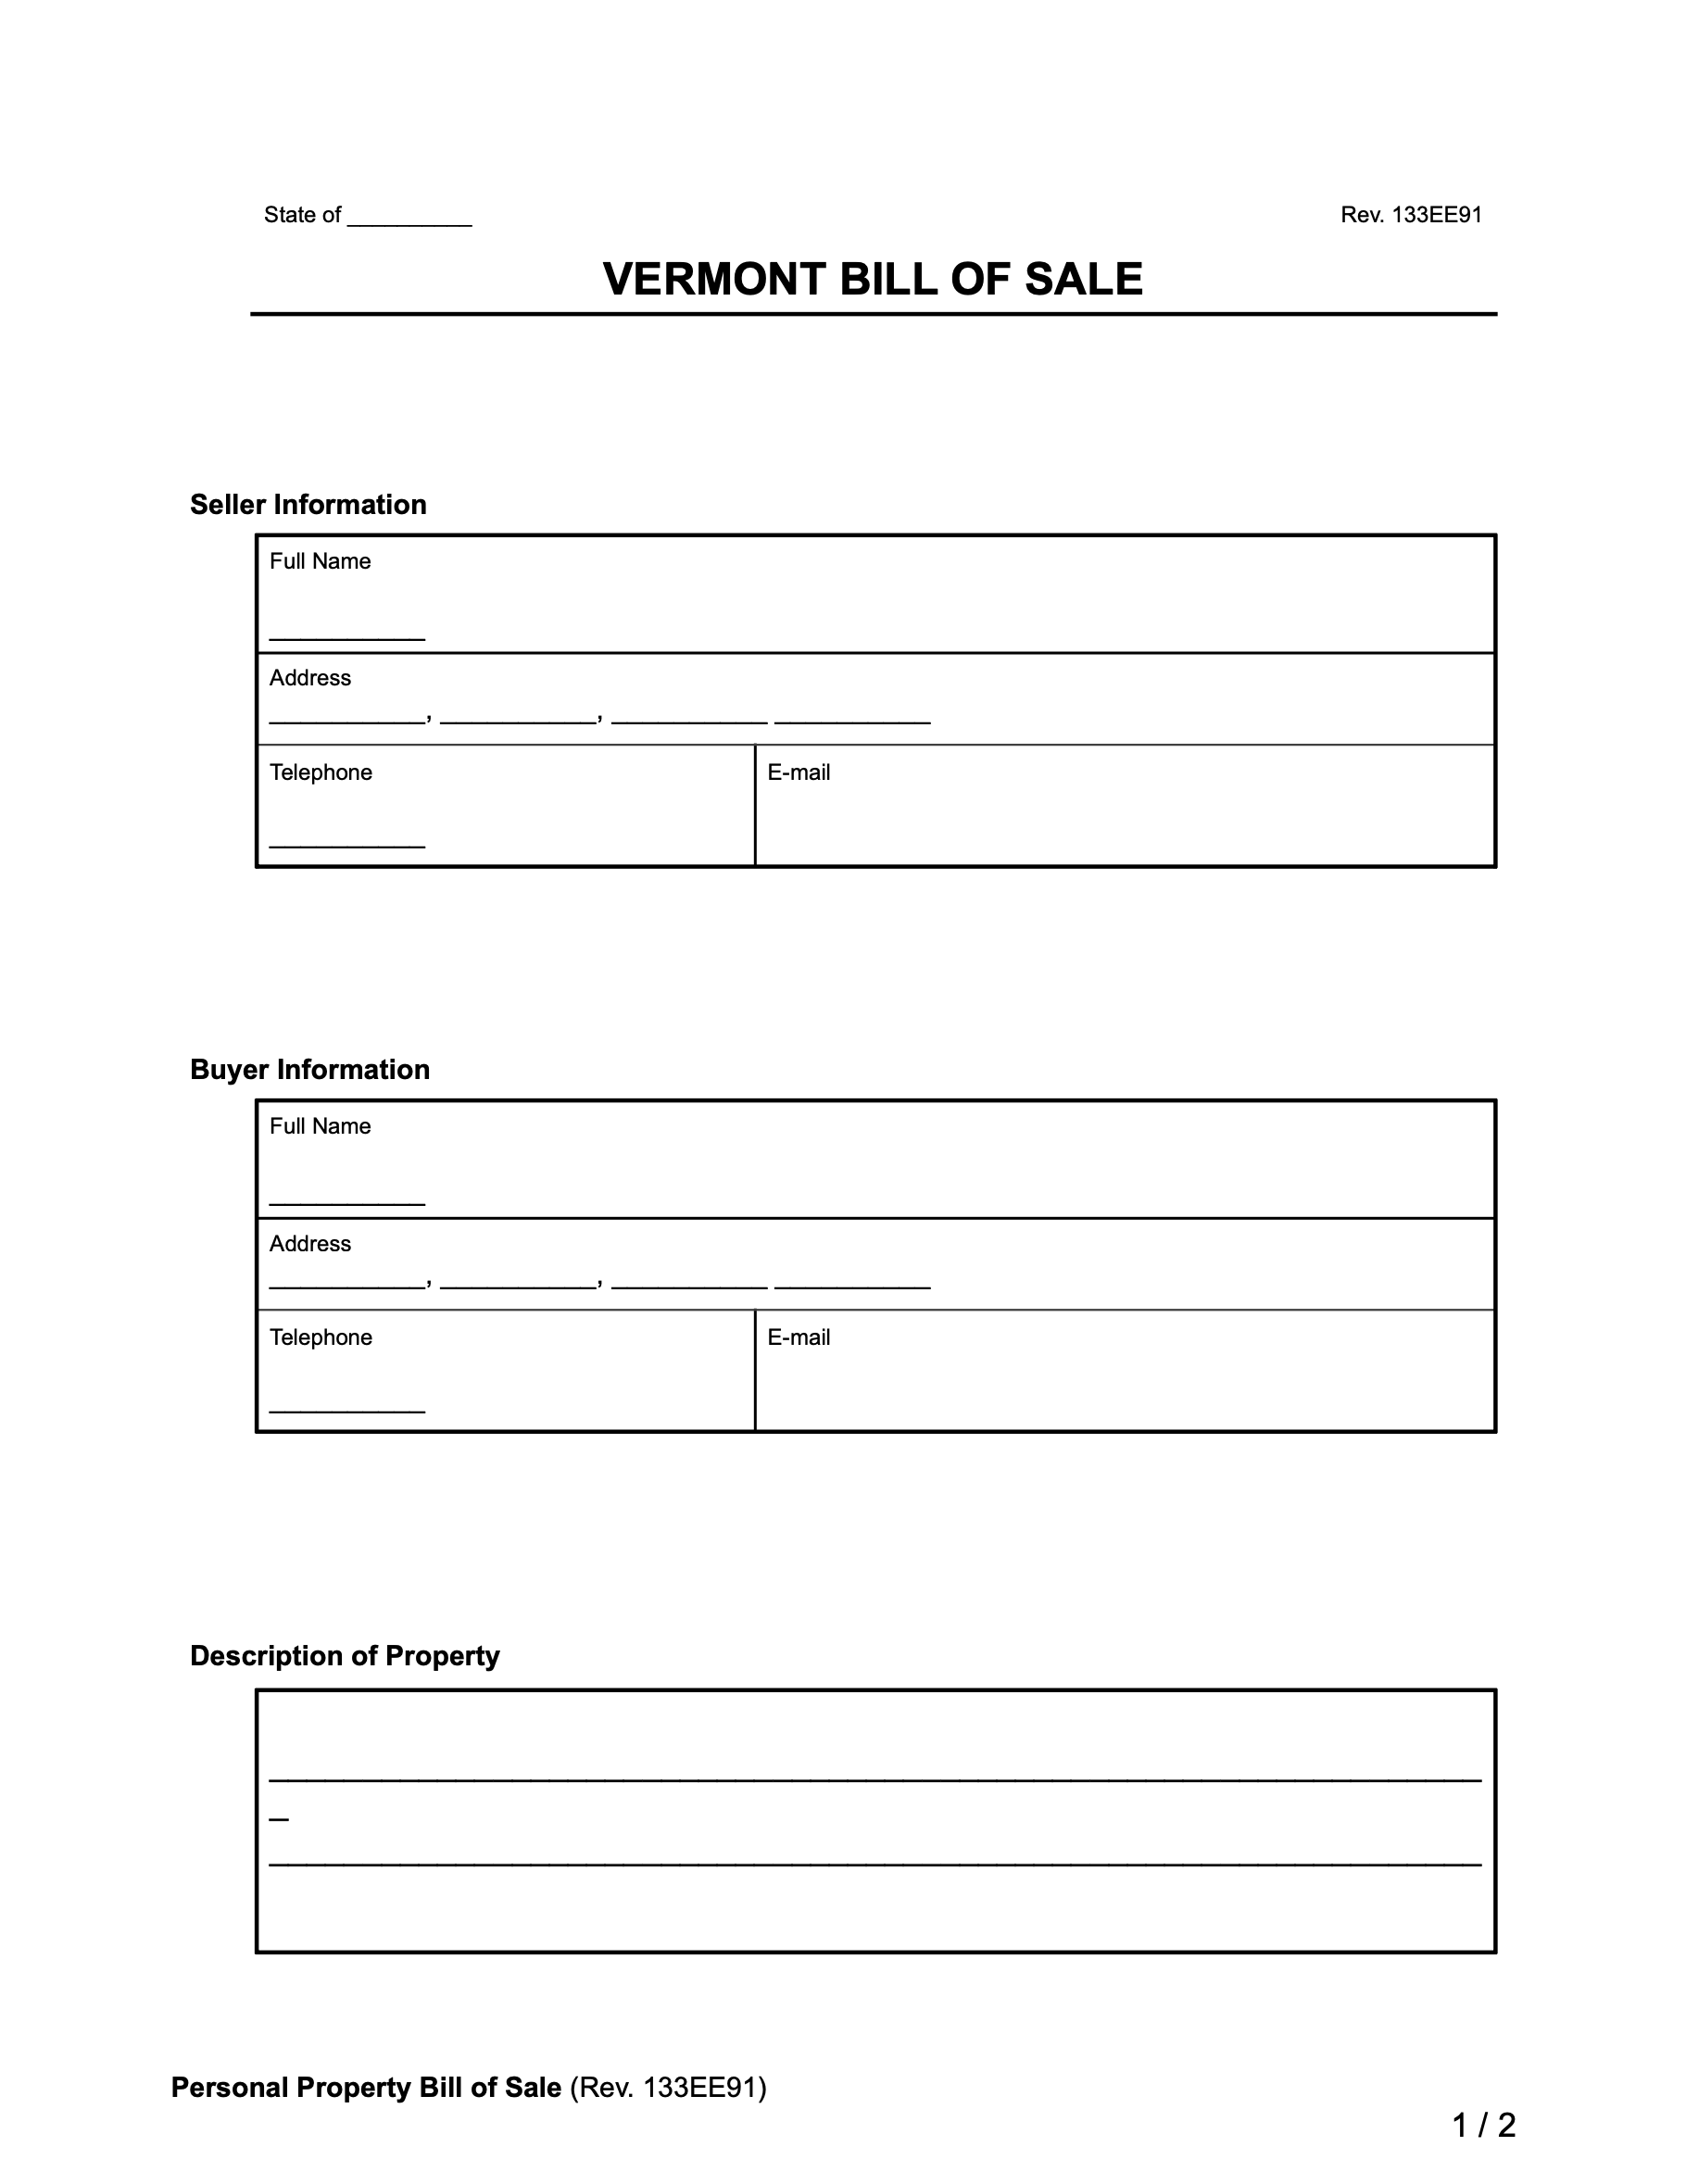 vermont bill of sale